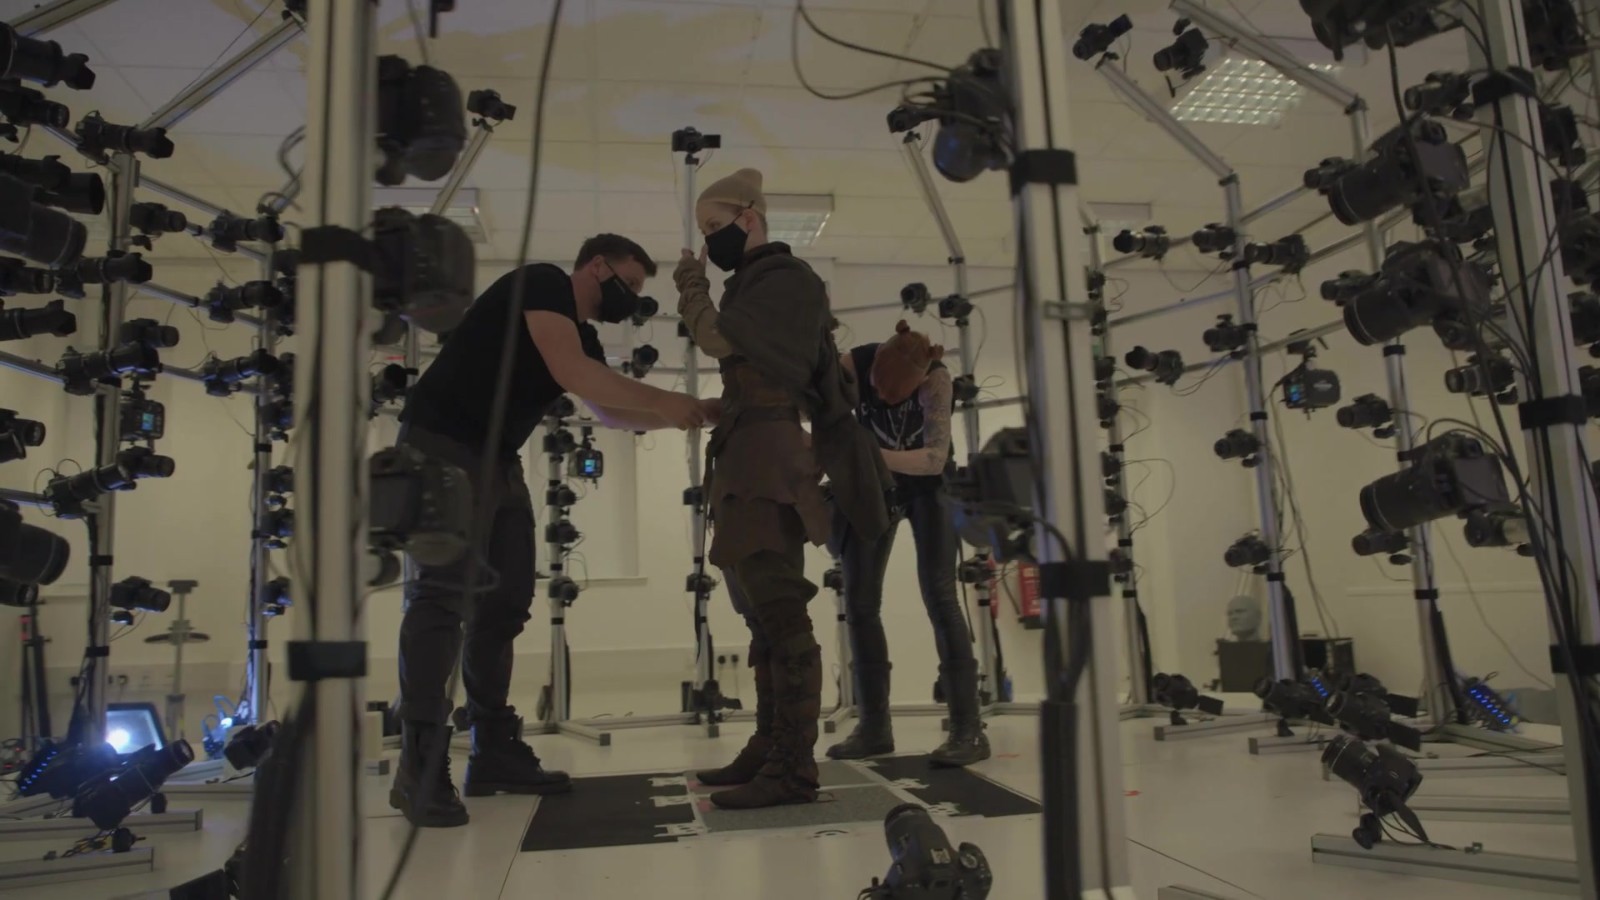 《地狱之刃2》新开发视频展示面部捕捉系统效果